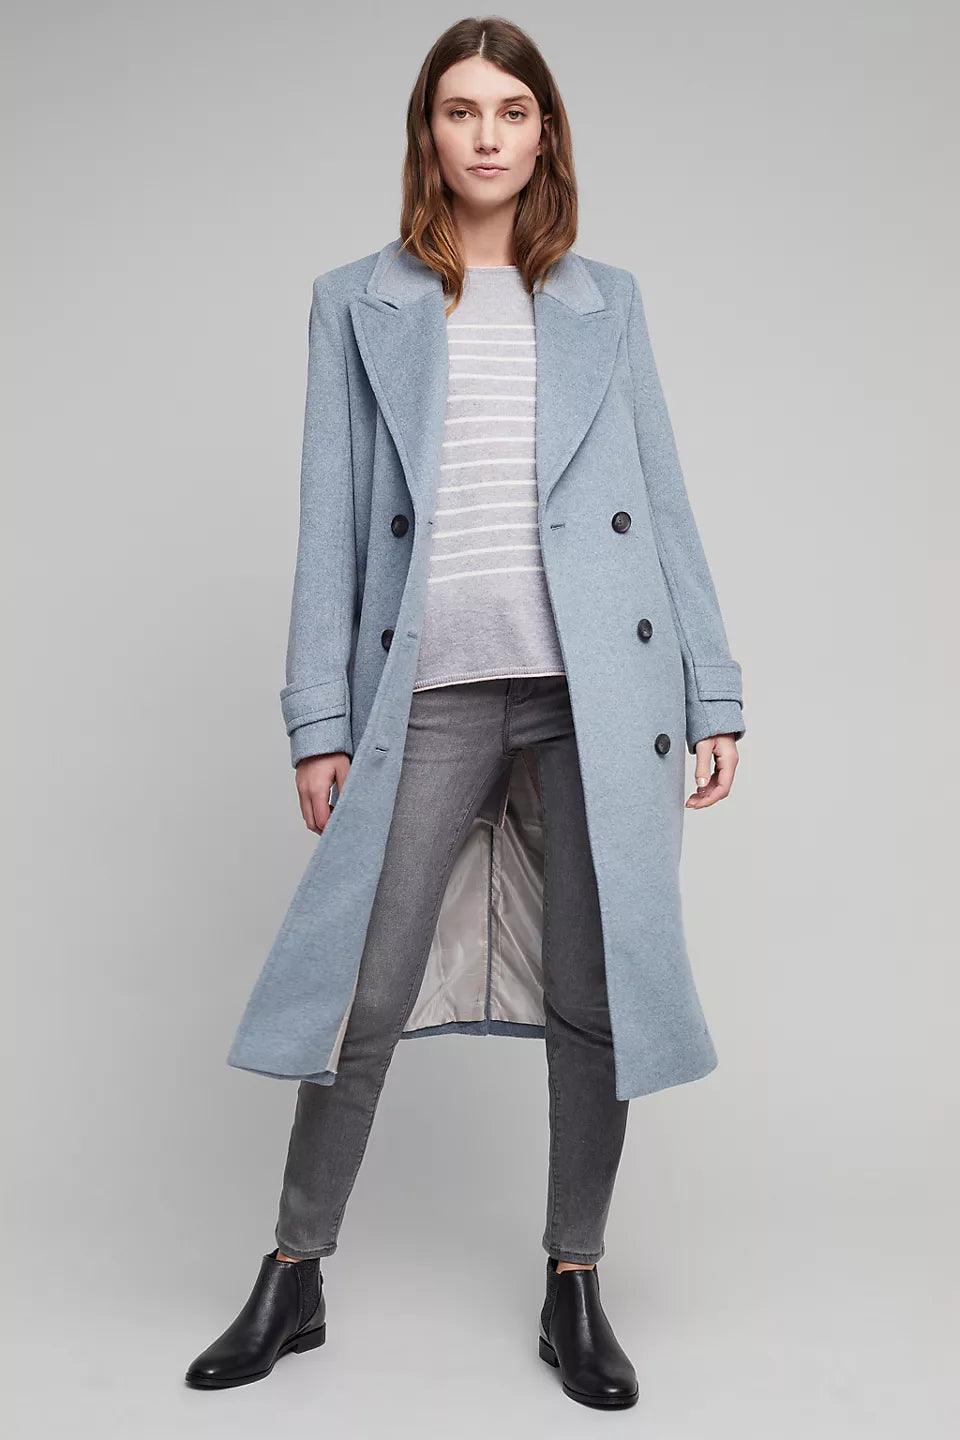 EMILY - Women's Slim Woolen Fashion Jacket - Glinyt